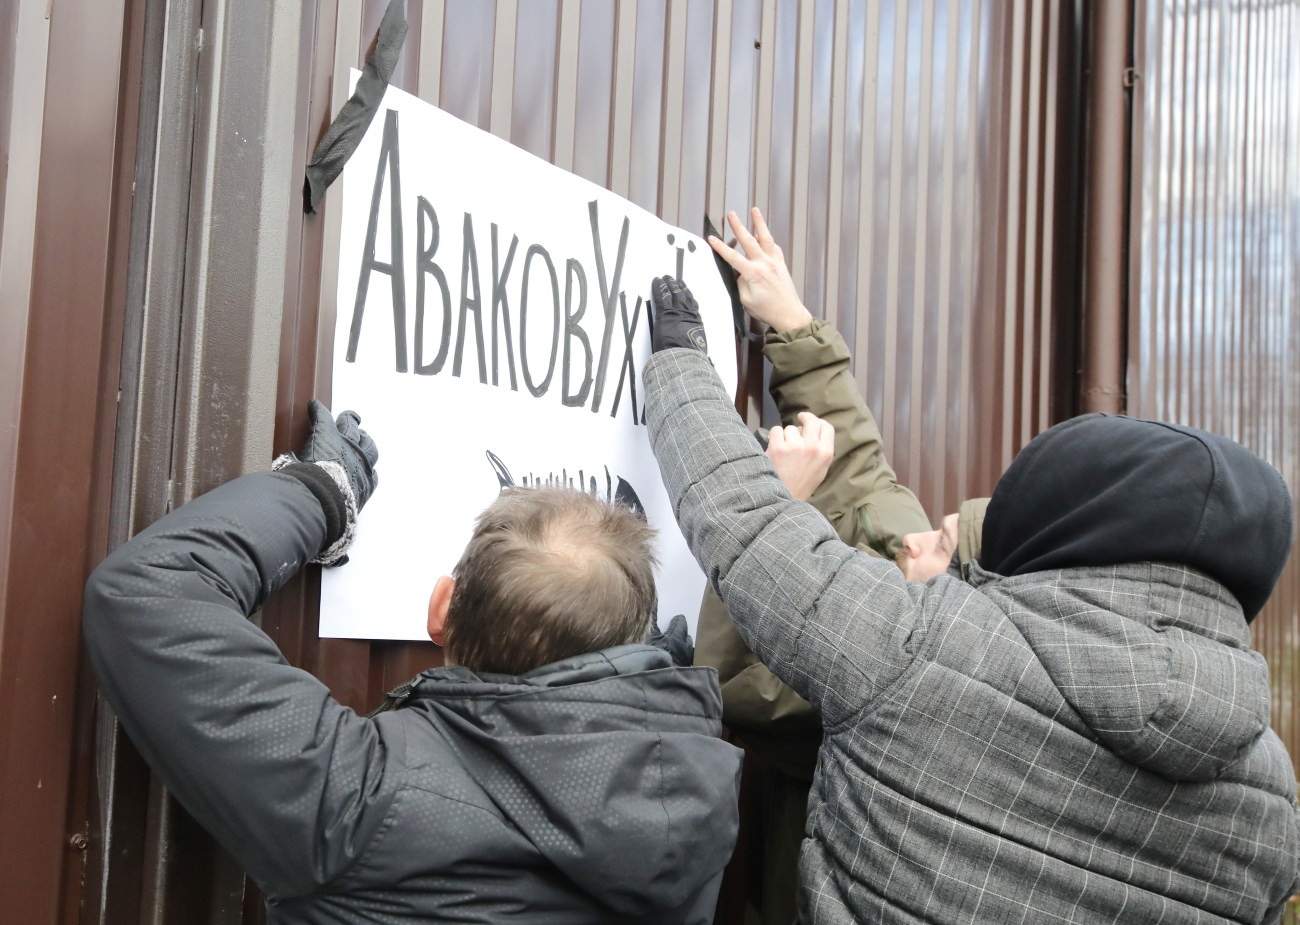 Против Авакова собирают Майдан